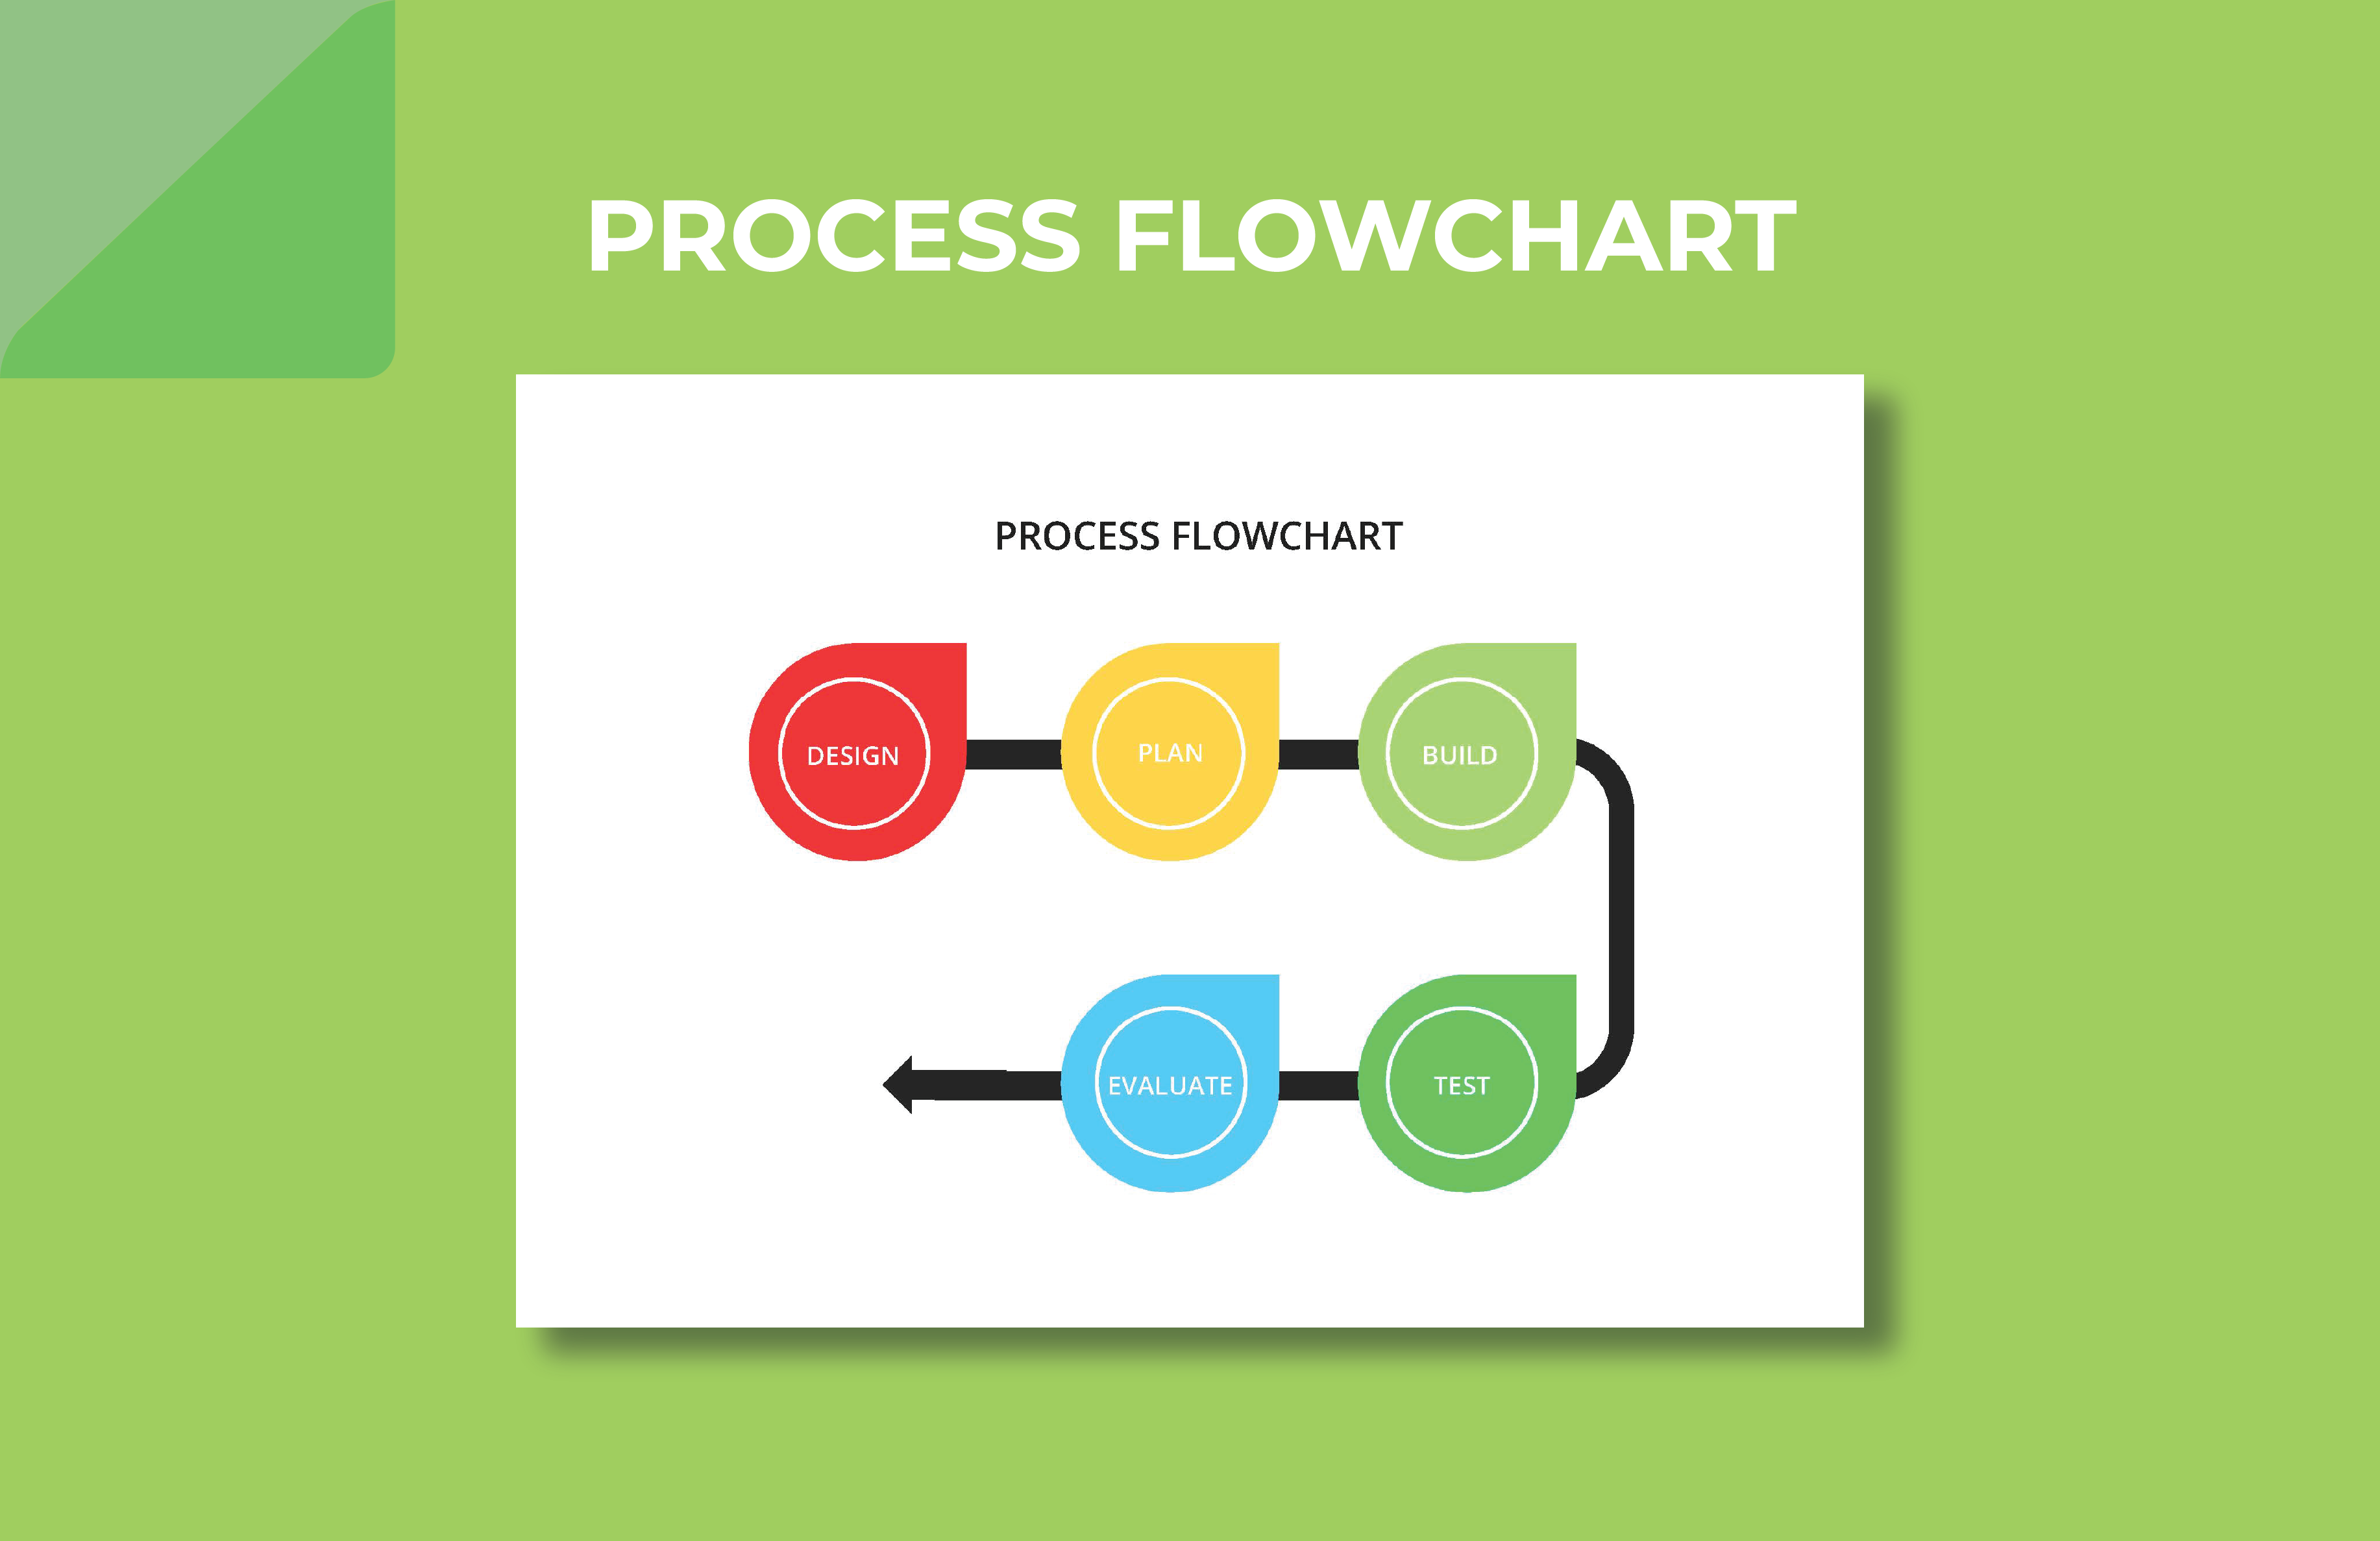 Process Flowchart Template